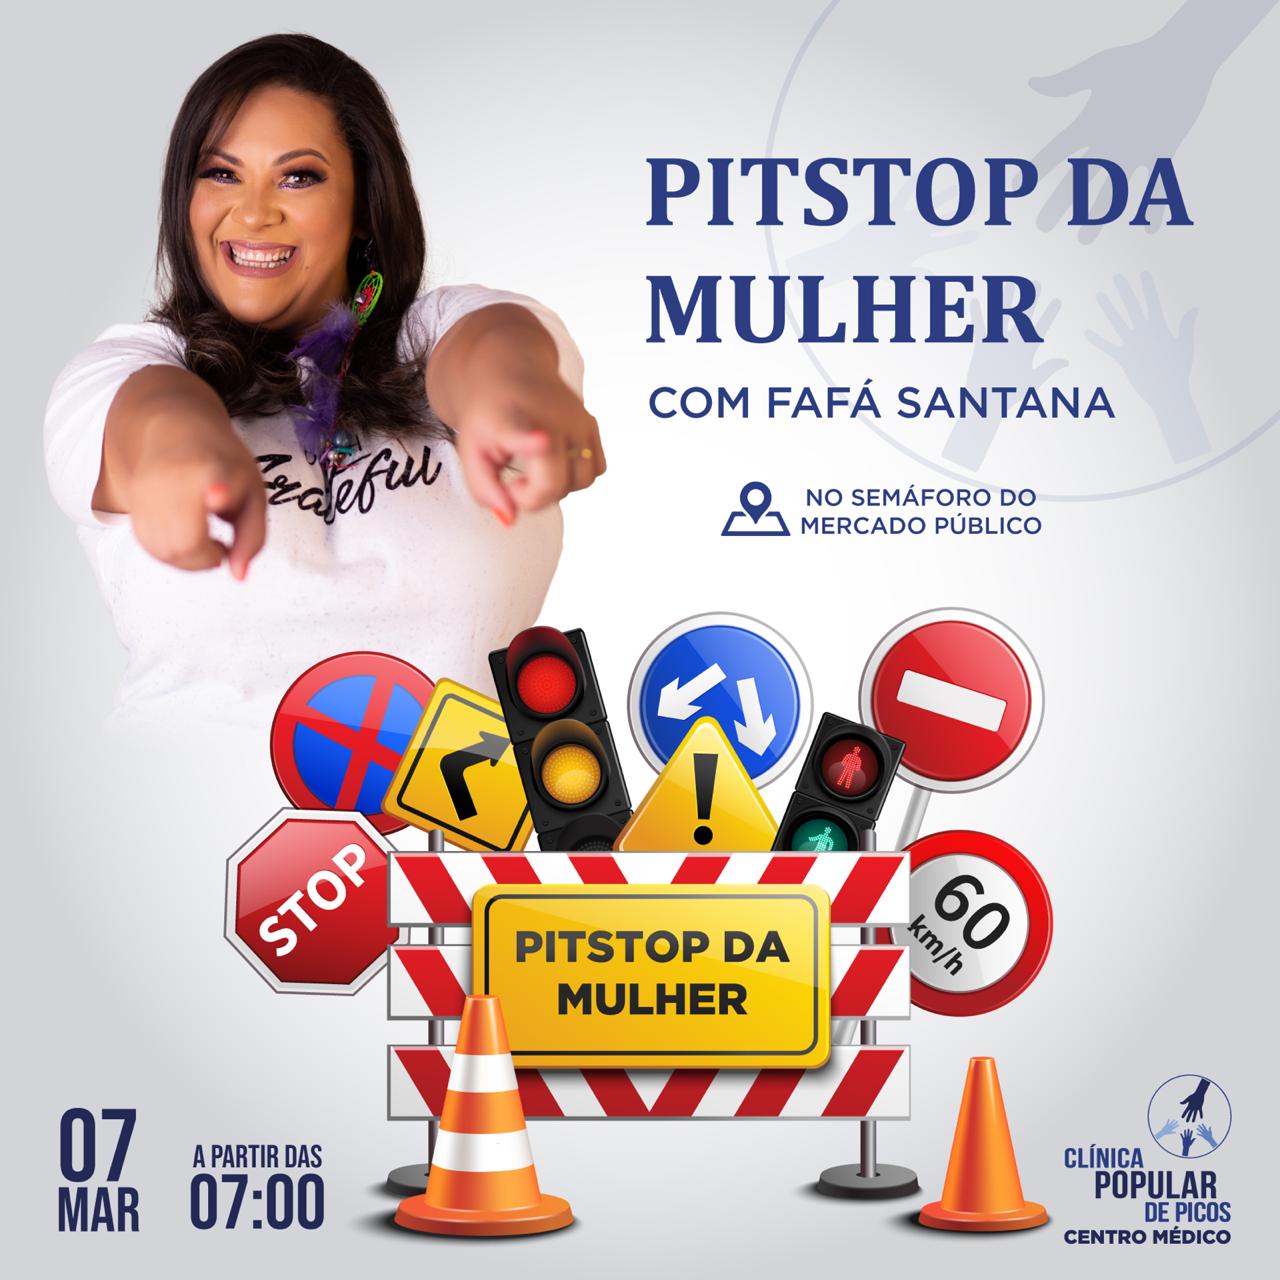 Clínica Popular de Picos está realizando neste sábado (07) Pit Stop da saúde da mulher